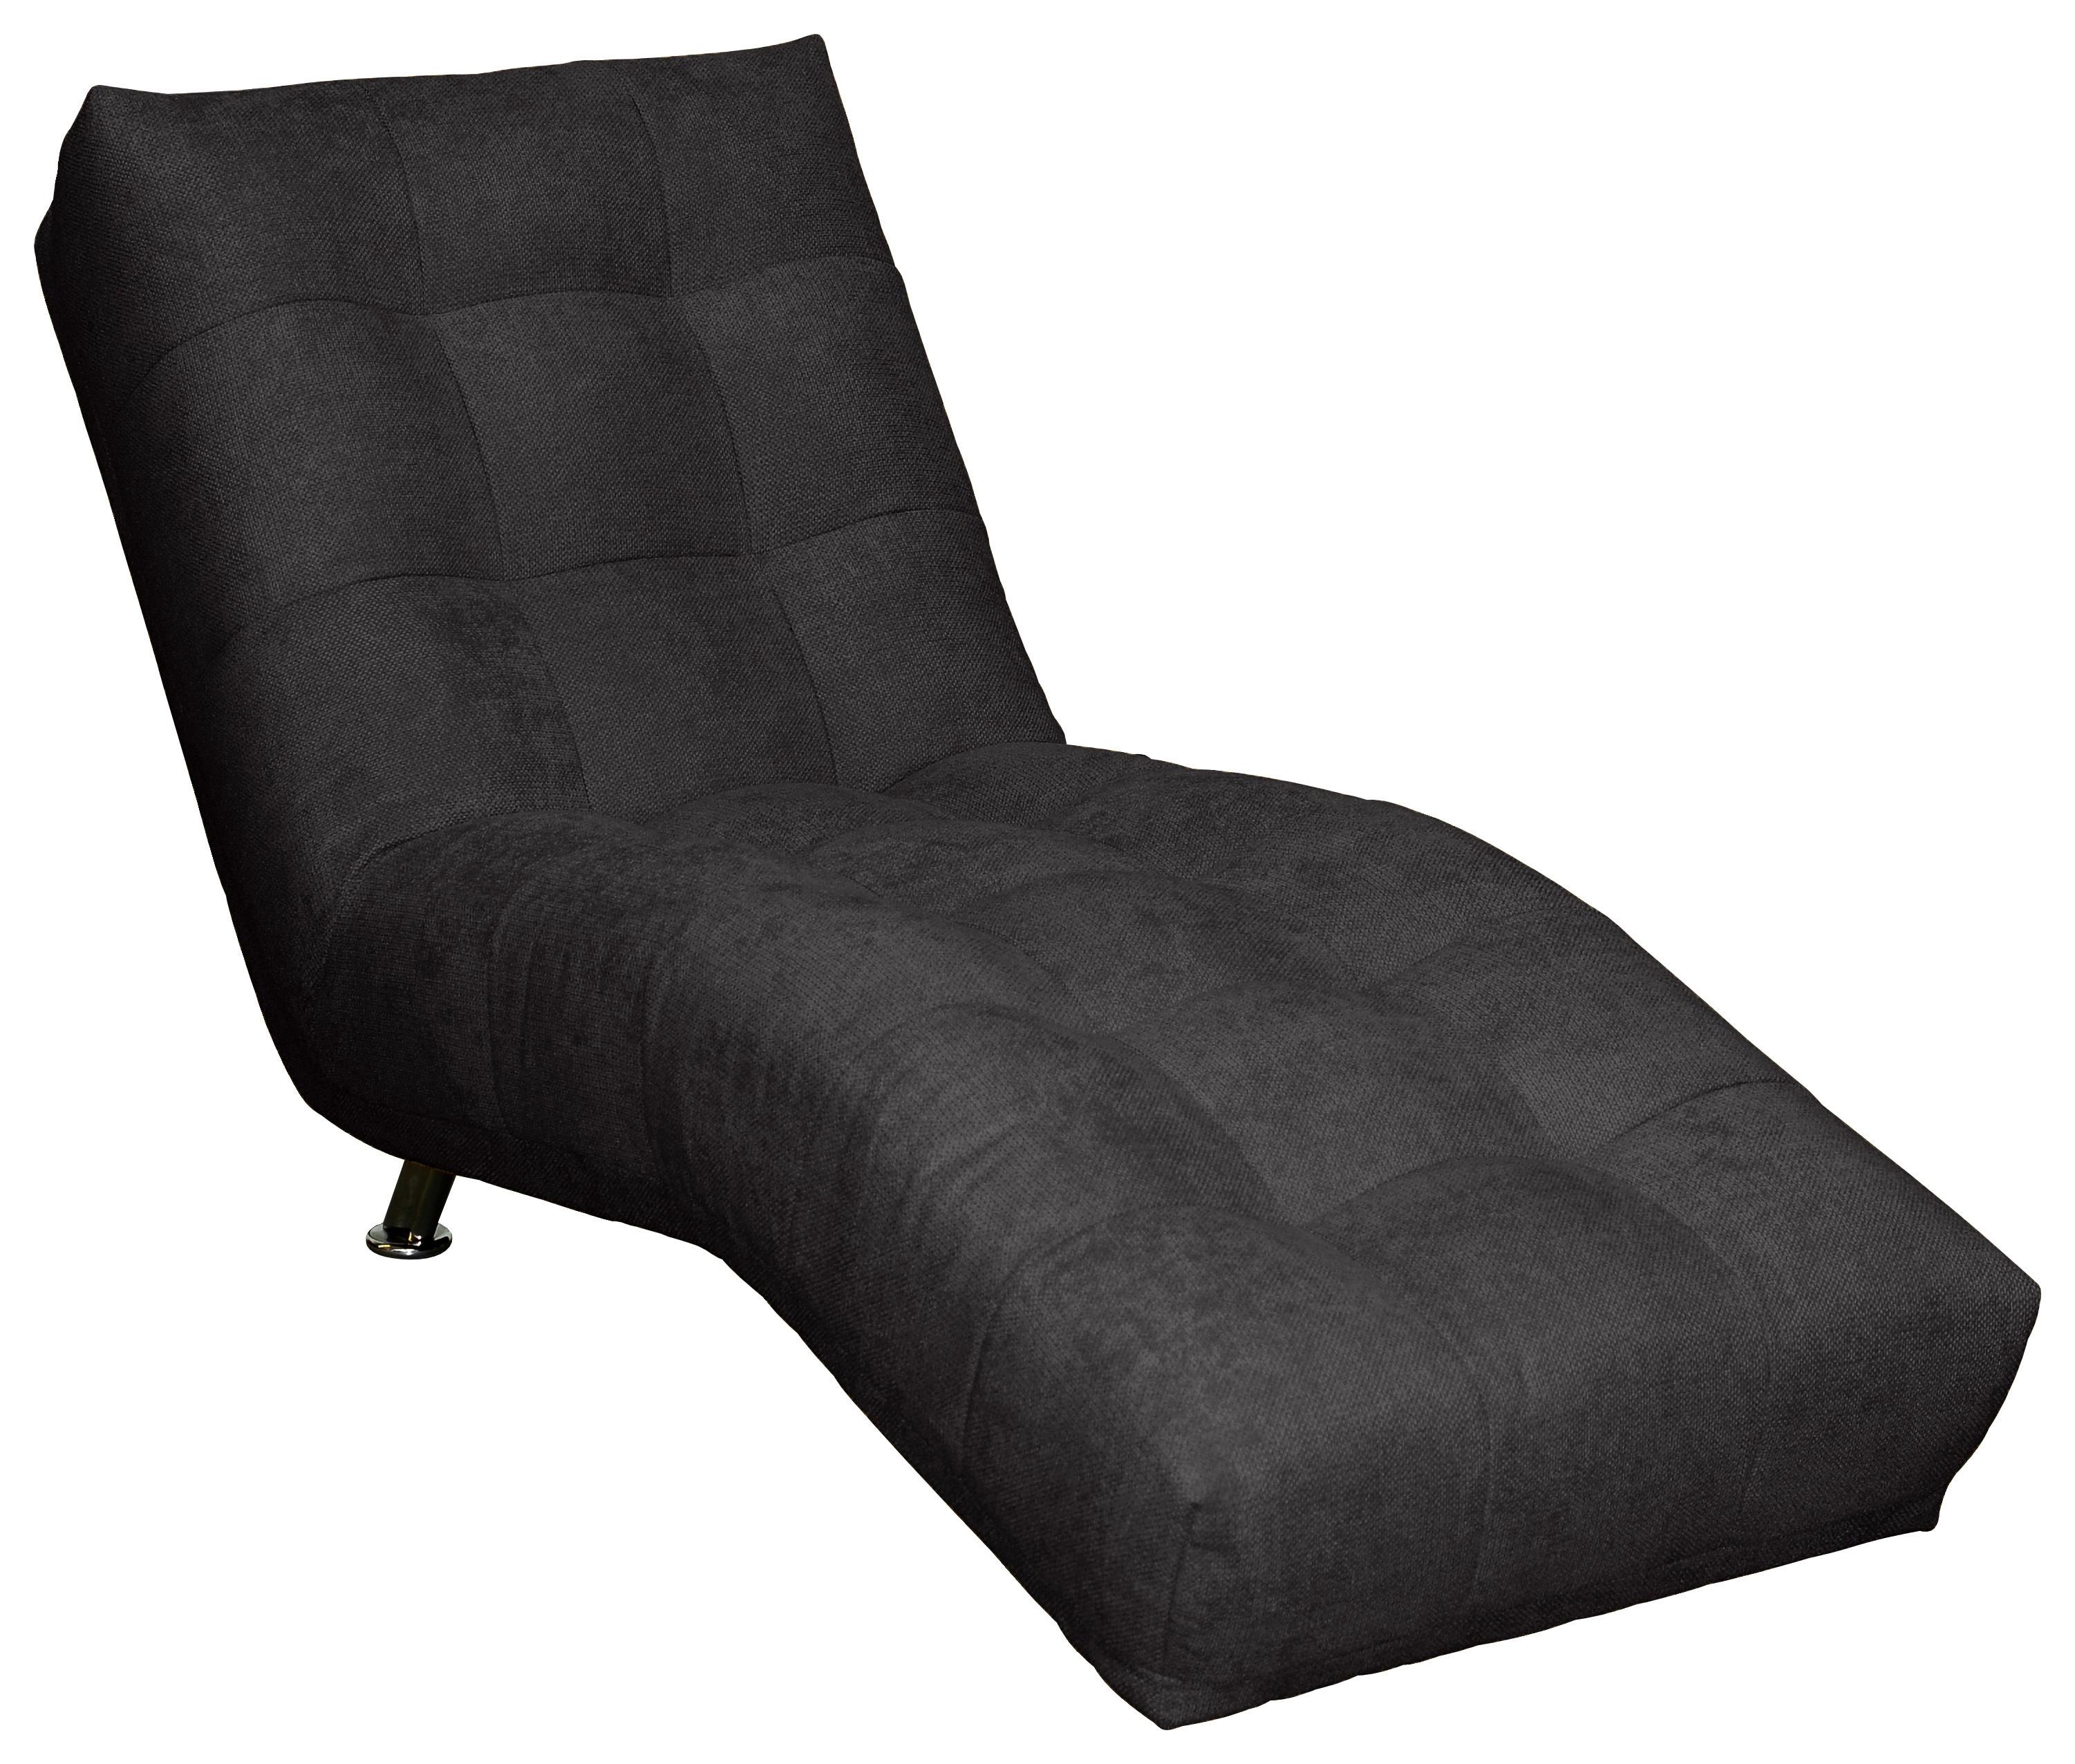 Relaxační Lehátko Isabella, Černé - černá/barvy chromu, Moderní, kov/textil (68/88/164cm)